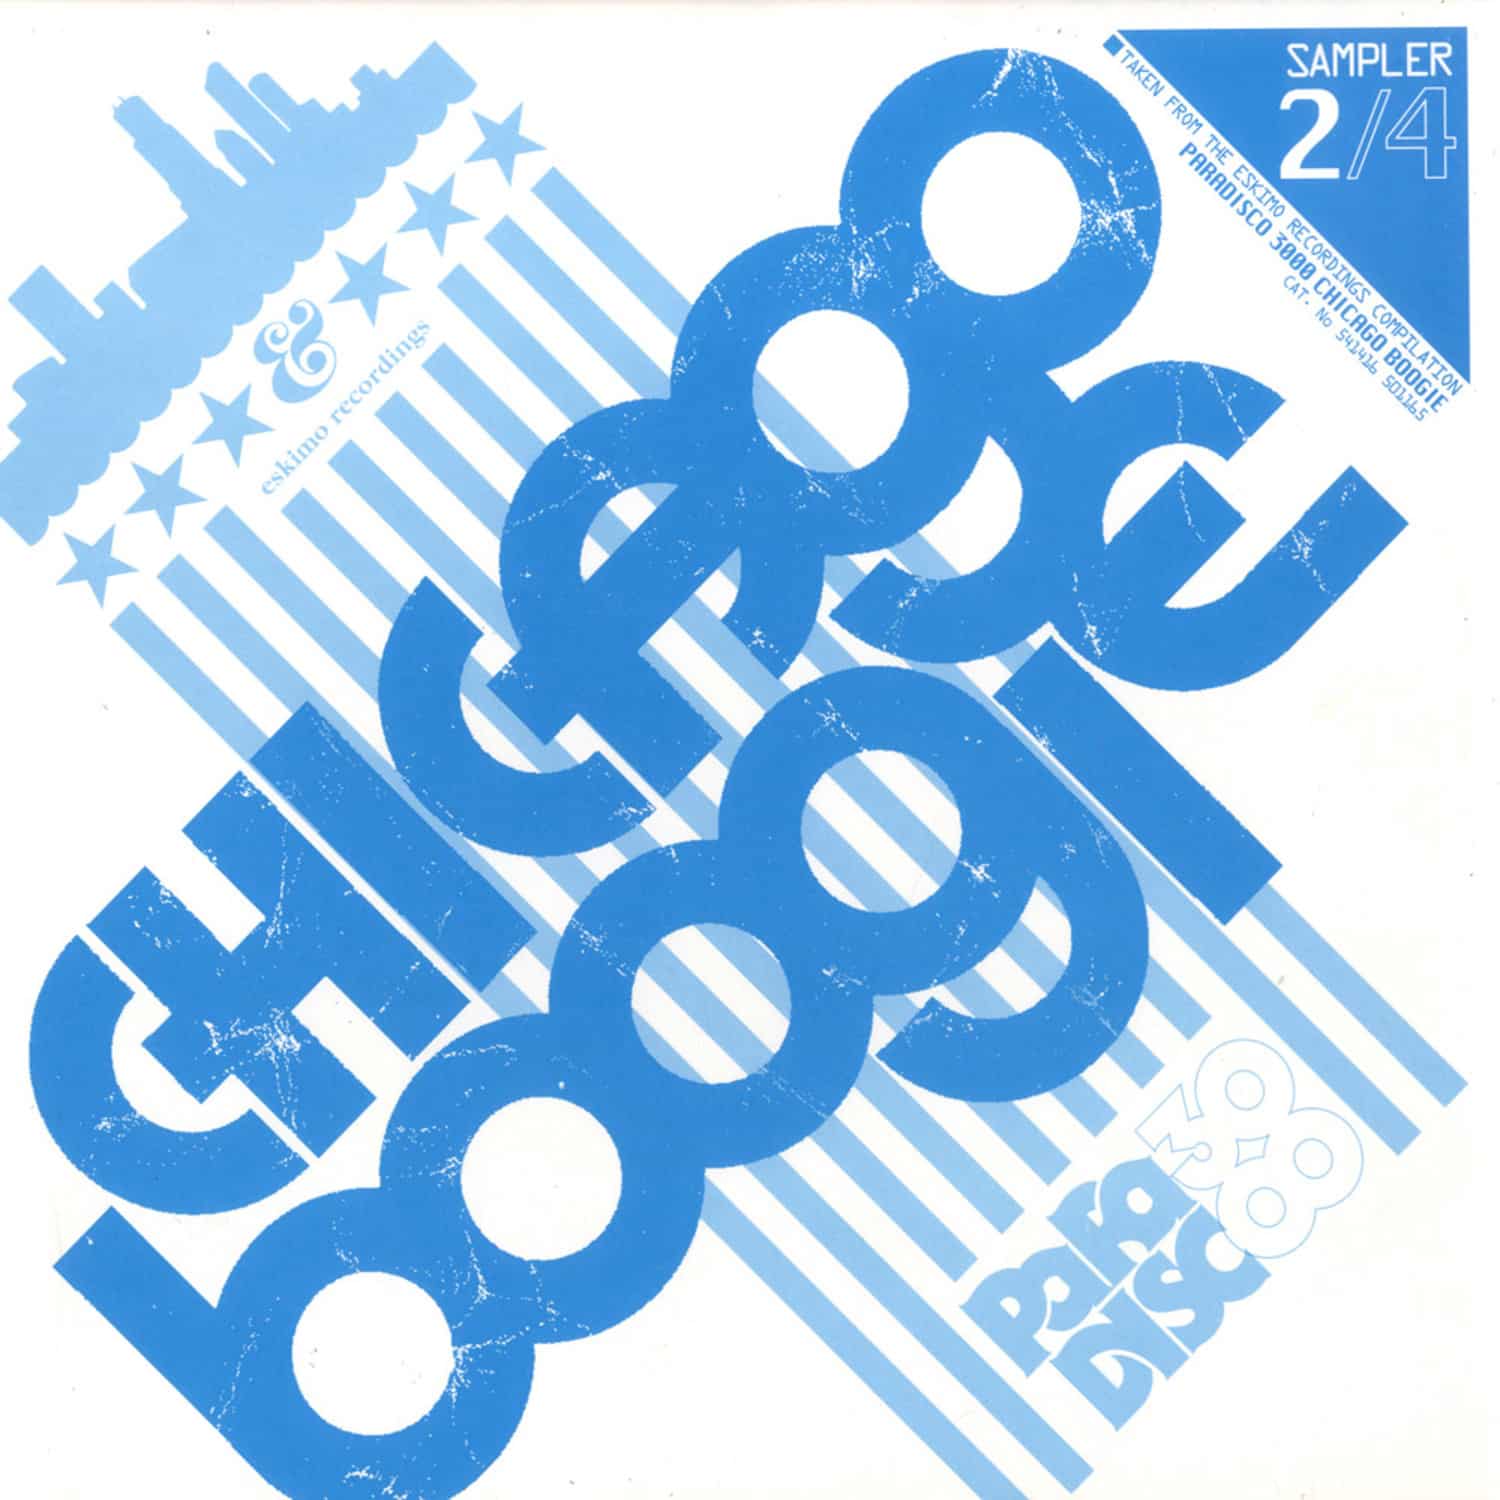 V/A - Paradisco 3000 Chicago Boogie Sampler 2 / 4